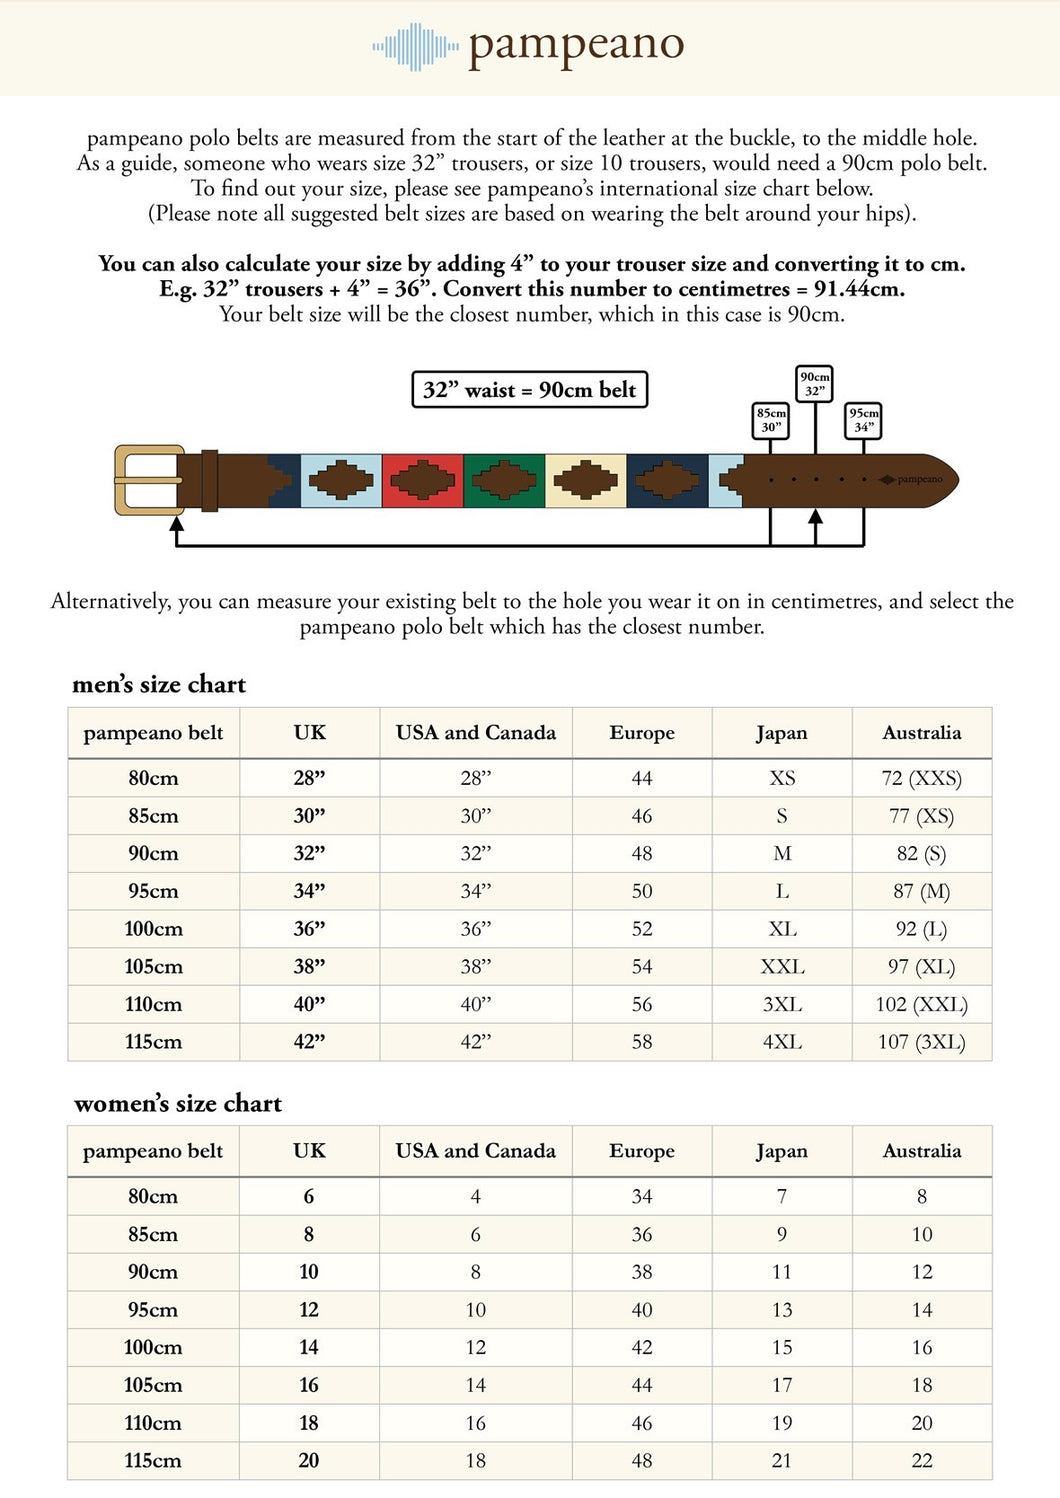 Belt size guide